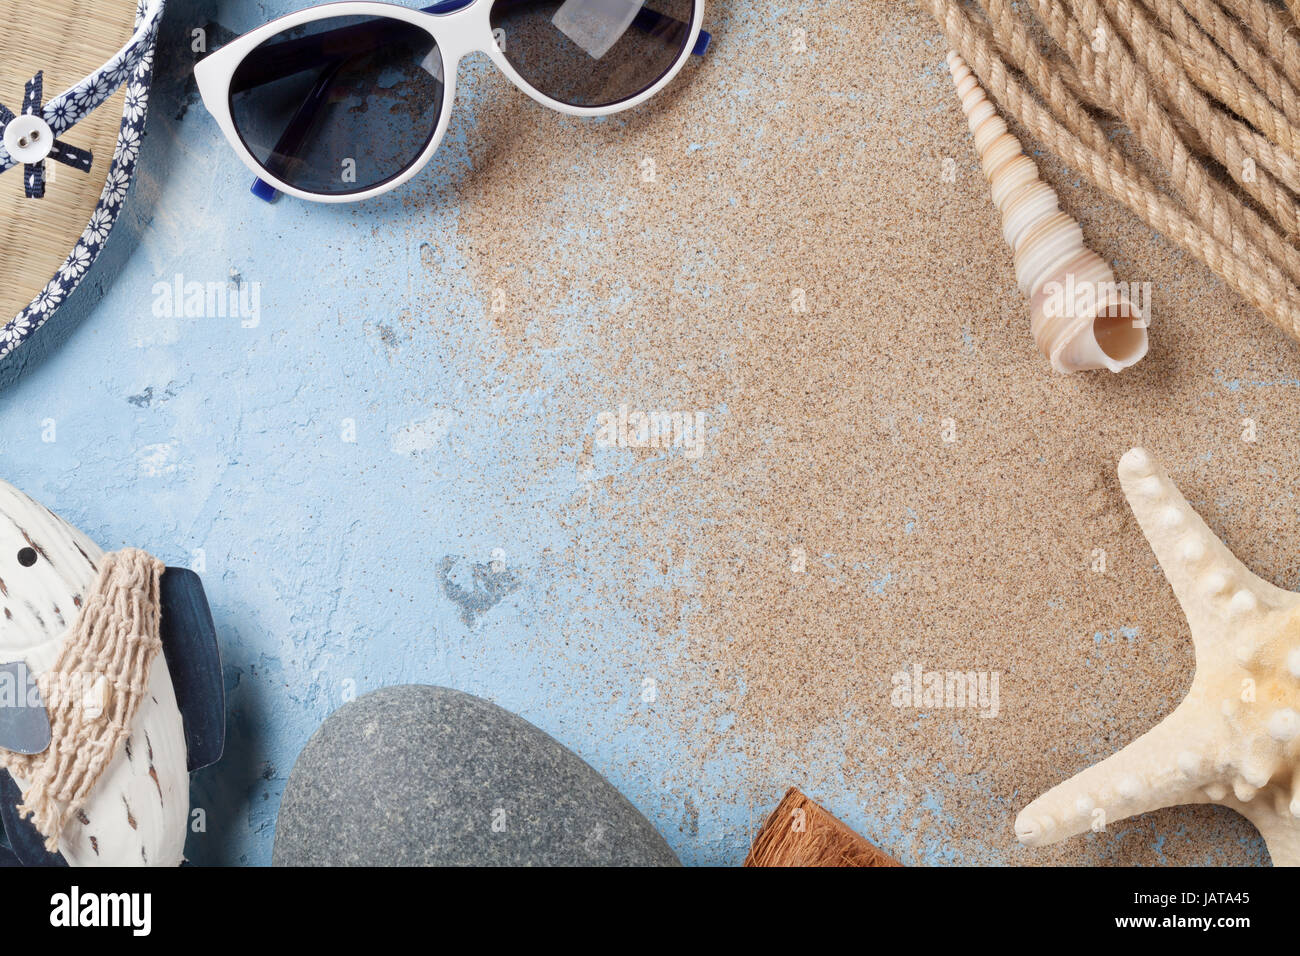 Accessori da spiaggia. Occhiali da sole, flip-flop e conchiglie di mare su sfondo di pietra. Vista da sopra con lo spazio di copia Foto Stock